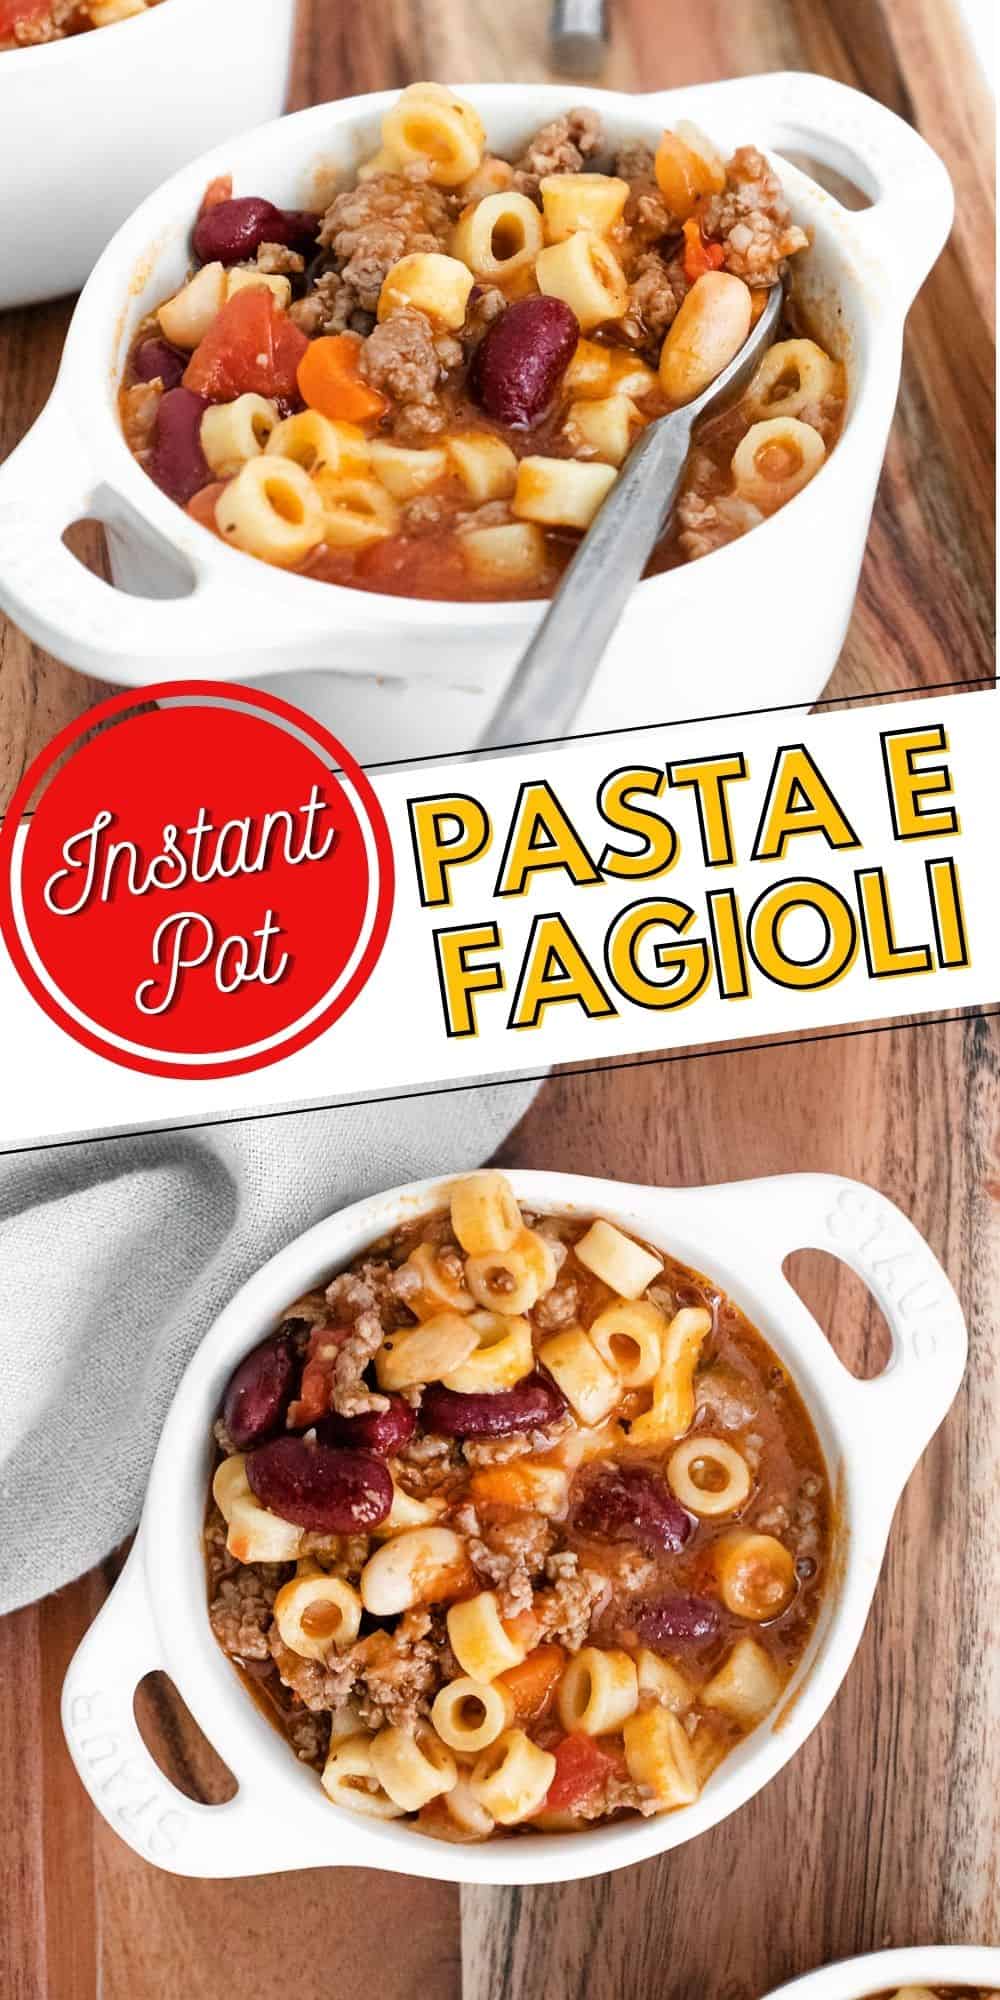 Instant Pot E Fagioli Soup | Italian Pasta Bean Soup in a tomato beef stock